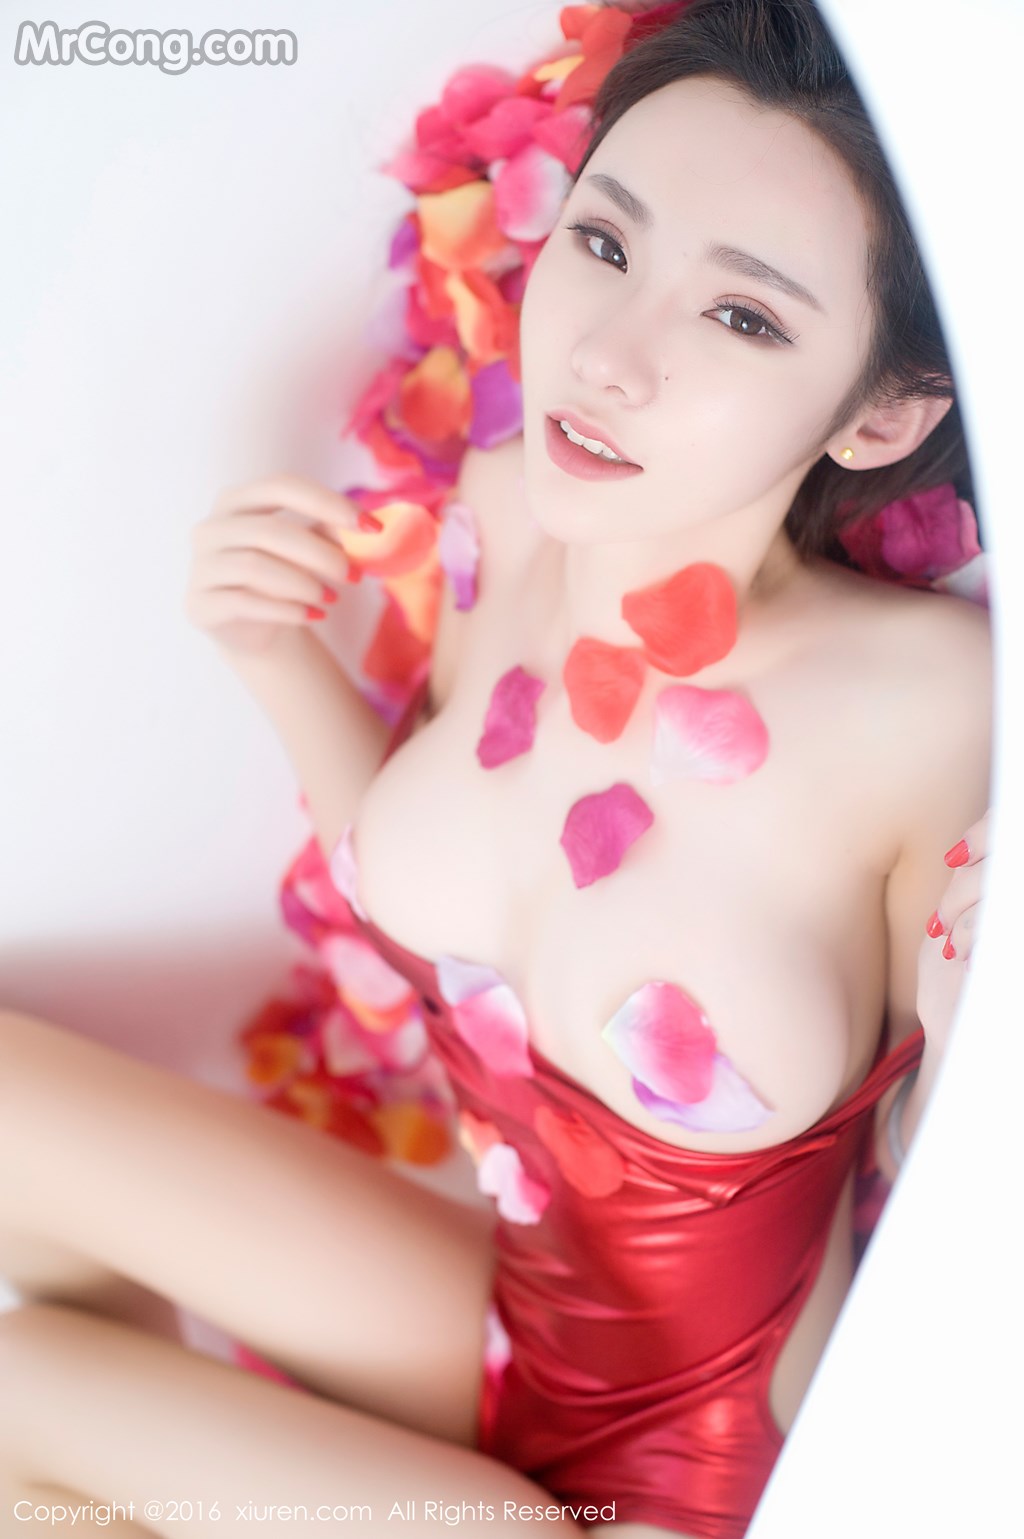 XIUREN No. 68: Model Irene (萌 琪琪) (60 photos)